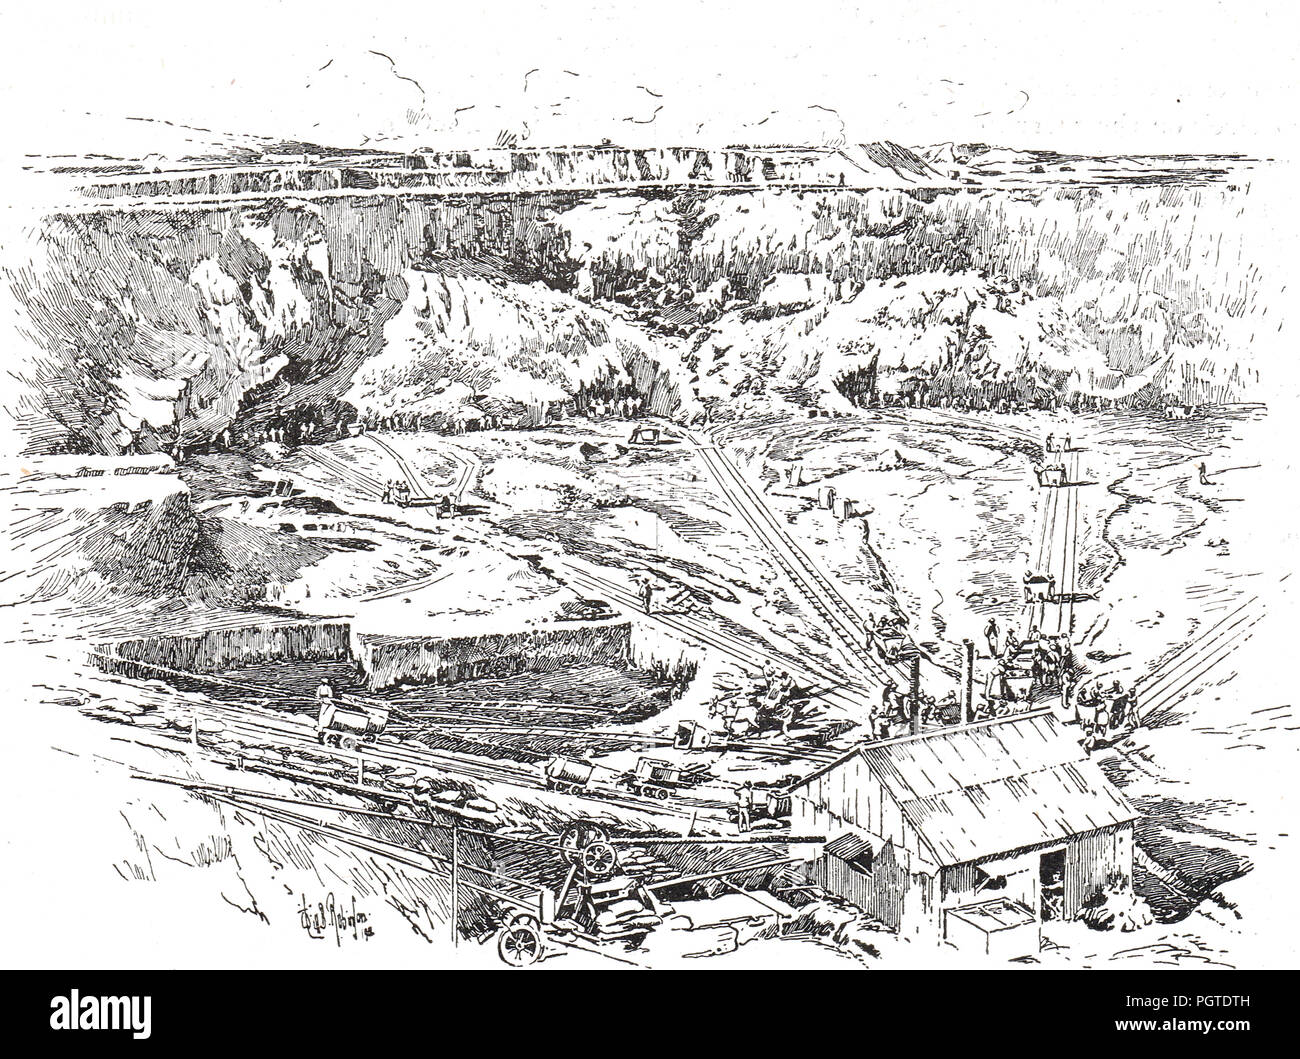 Une mine de diamants à Kimberley, Northern Cape, Afrique du Sud, vers 1900. Emplacement du siège de Kimberley, qui a eu lieu pendant la Seconde Guerre des Boers Banque D'Images